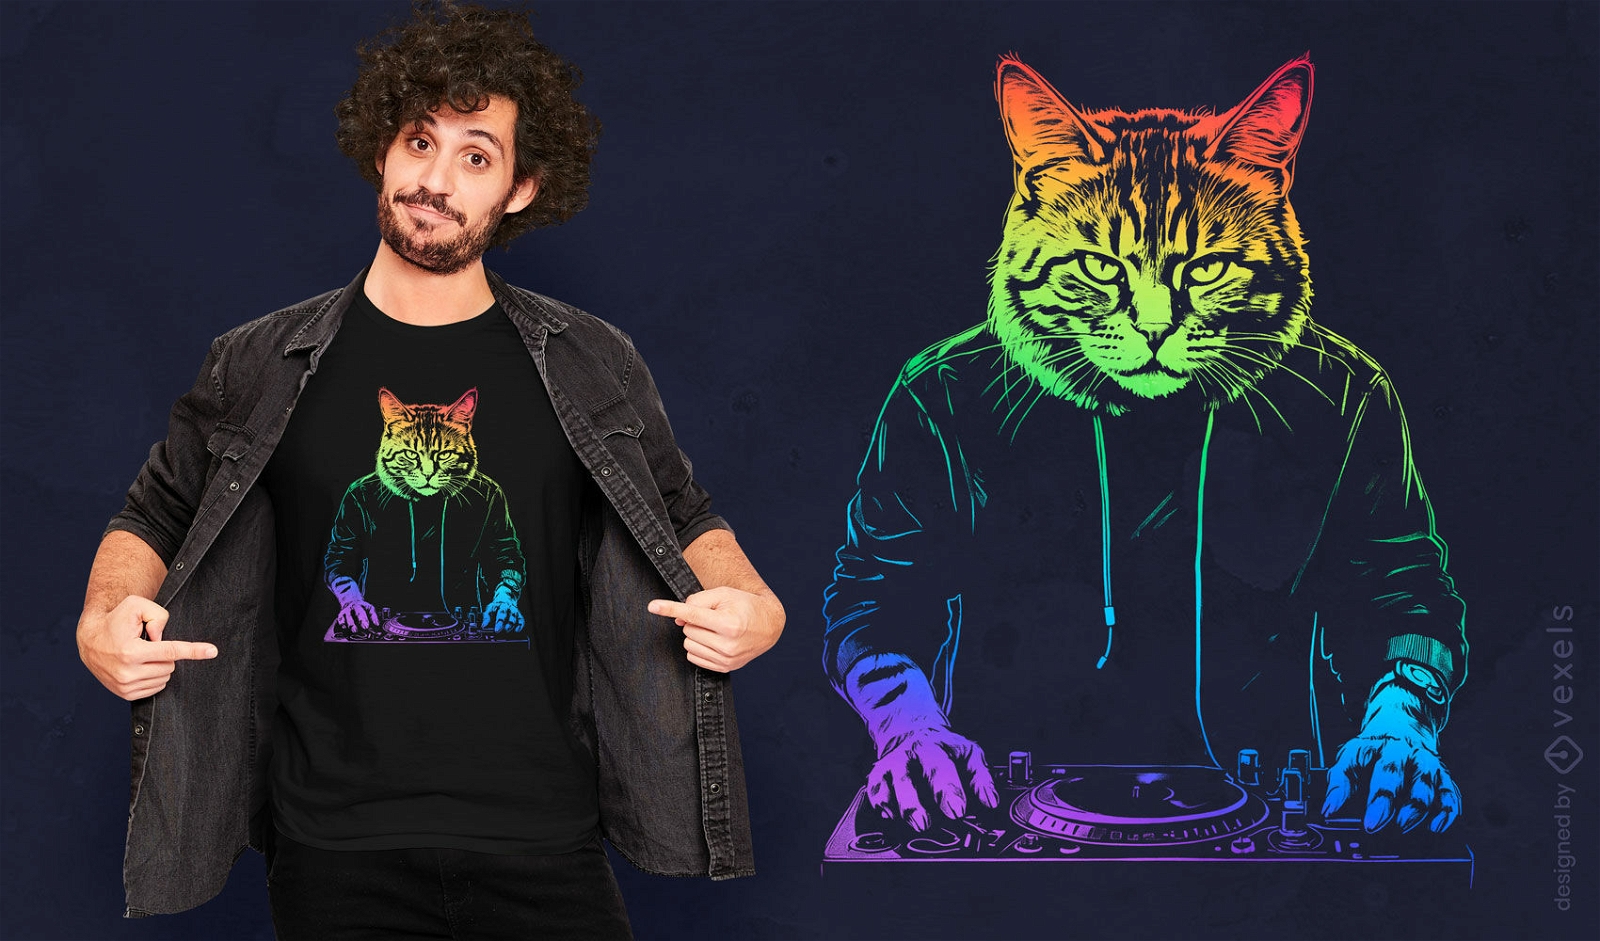 Diseño de camiseta de DJ Neon Cat.